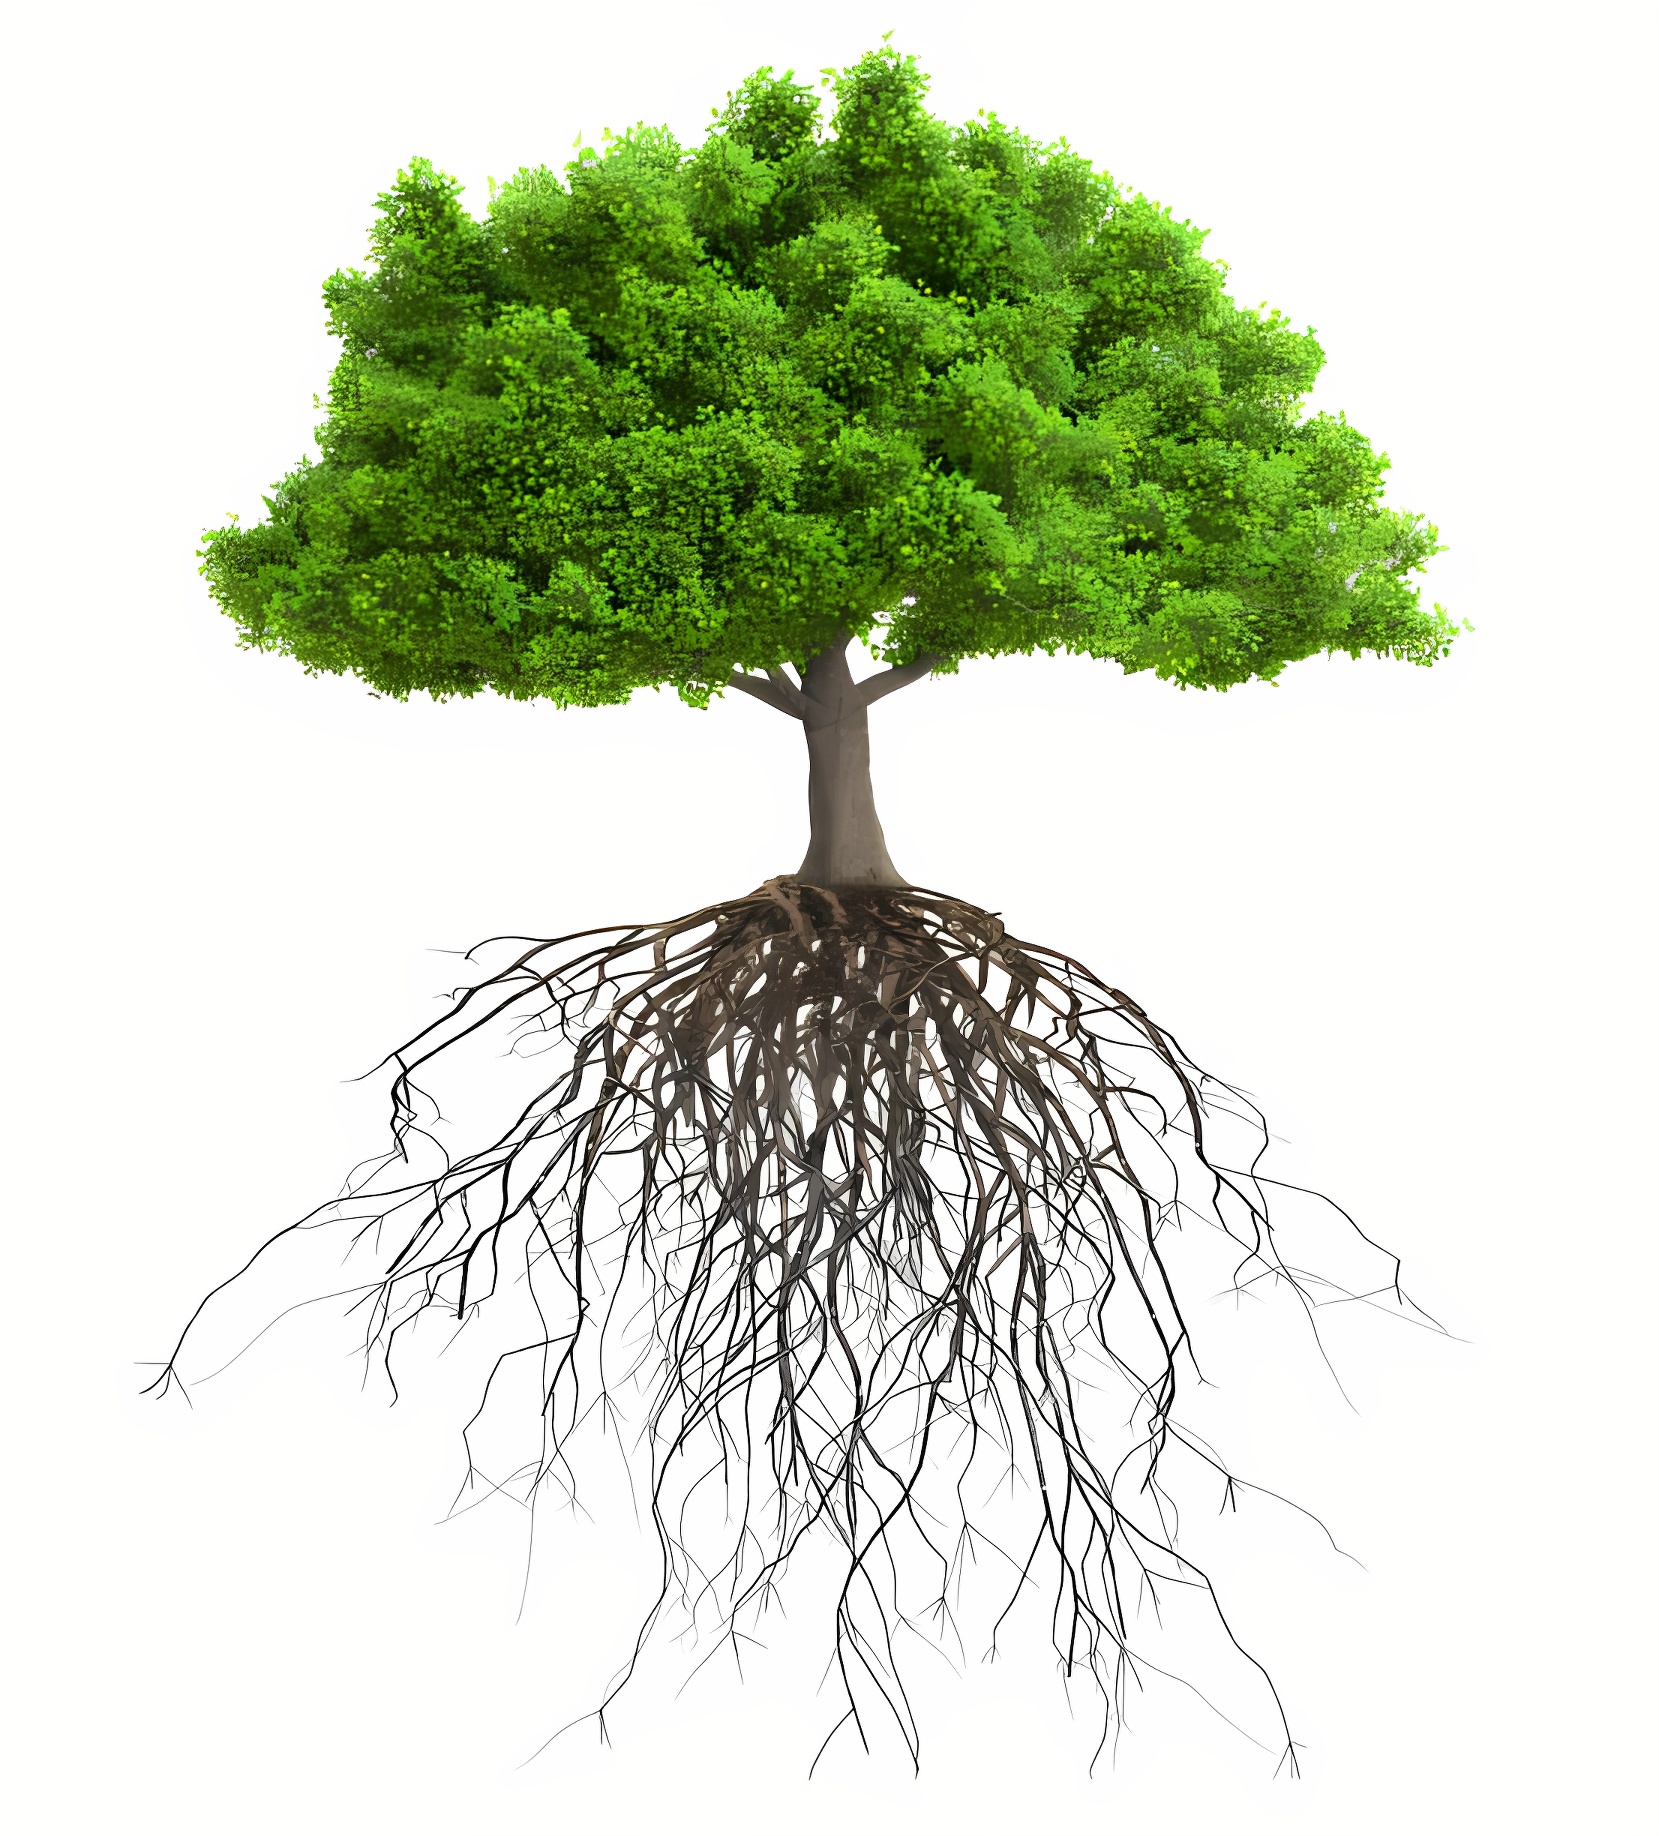 Каким образом корни участвуют в повышении плодородия почвы?